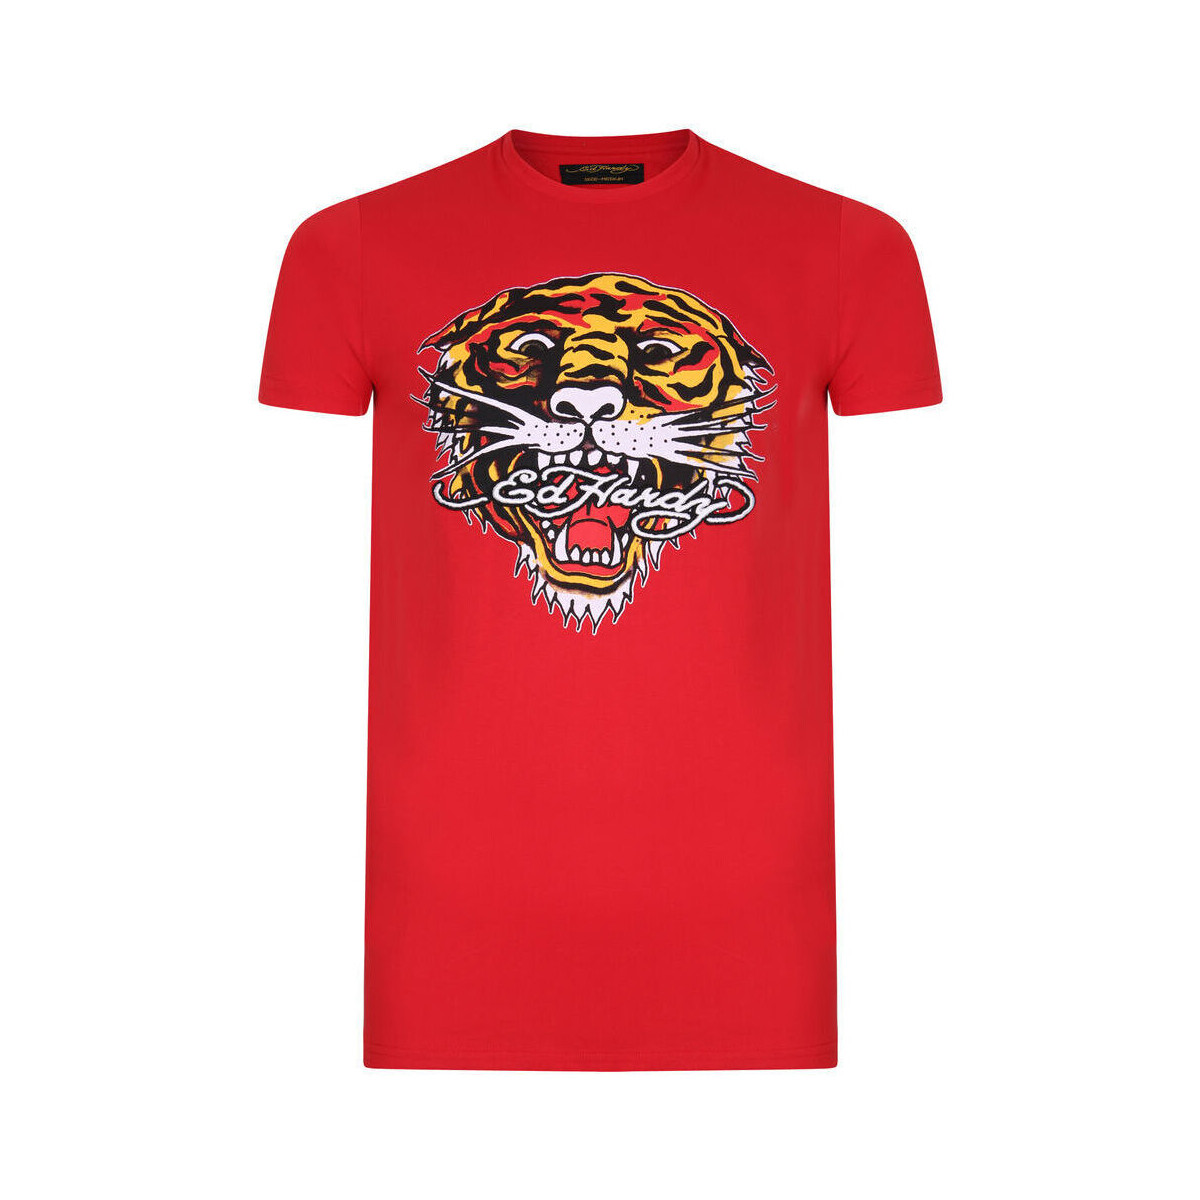 Oblačila Moški Majice s kratkimi rokavi Ed Hardy Tiger mouth graphic t-shirt red Rdeča